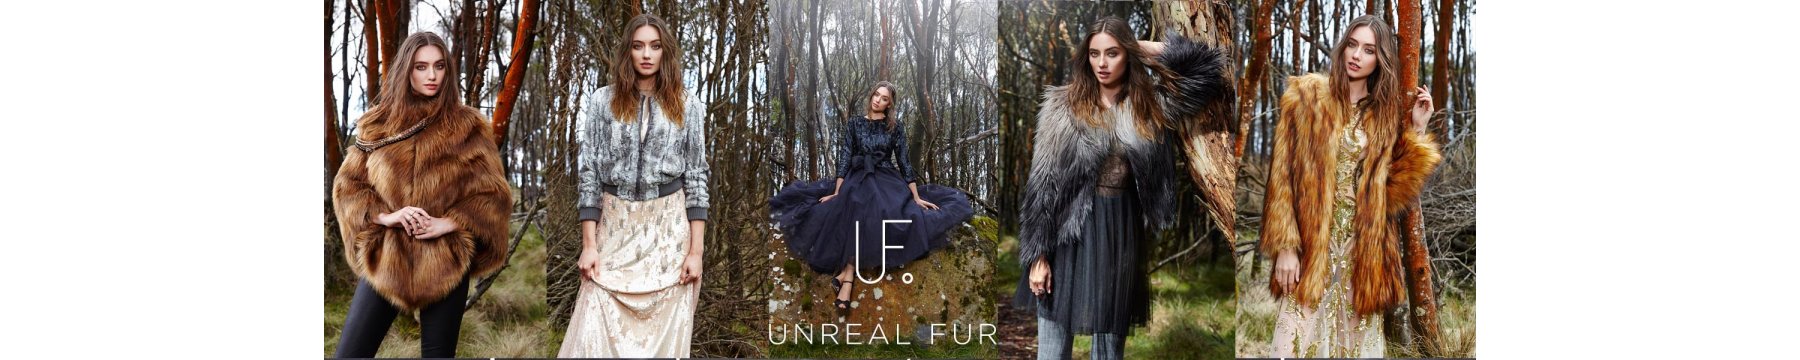 Unreal Fur